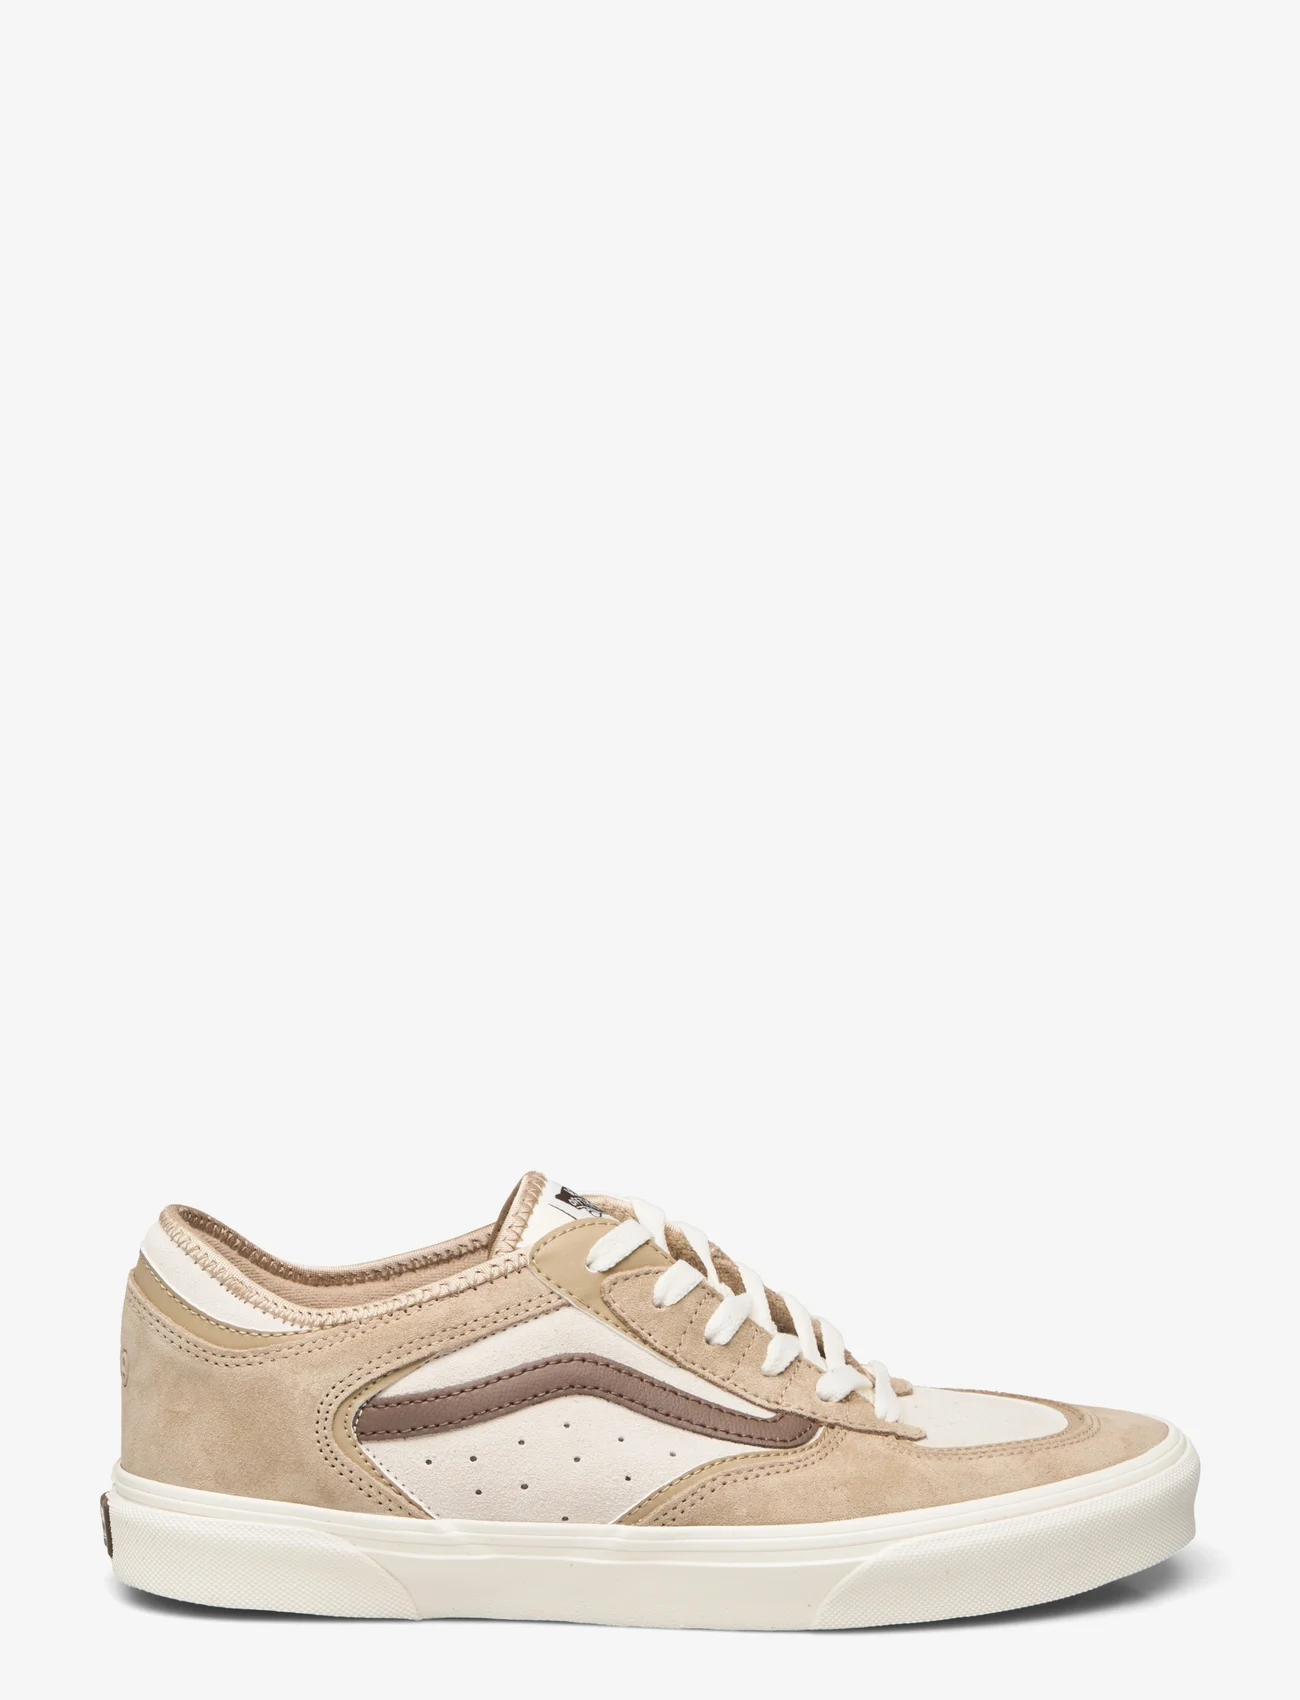 VANS - Rowley Classic - laag sneakers - brown/light gum - 1